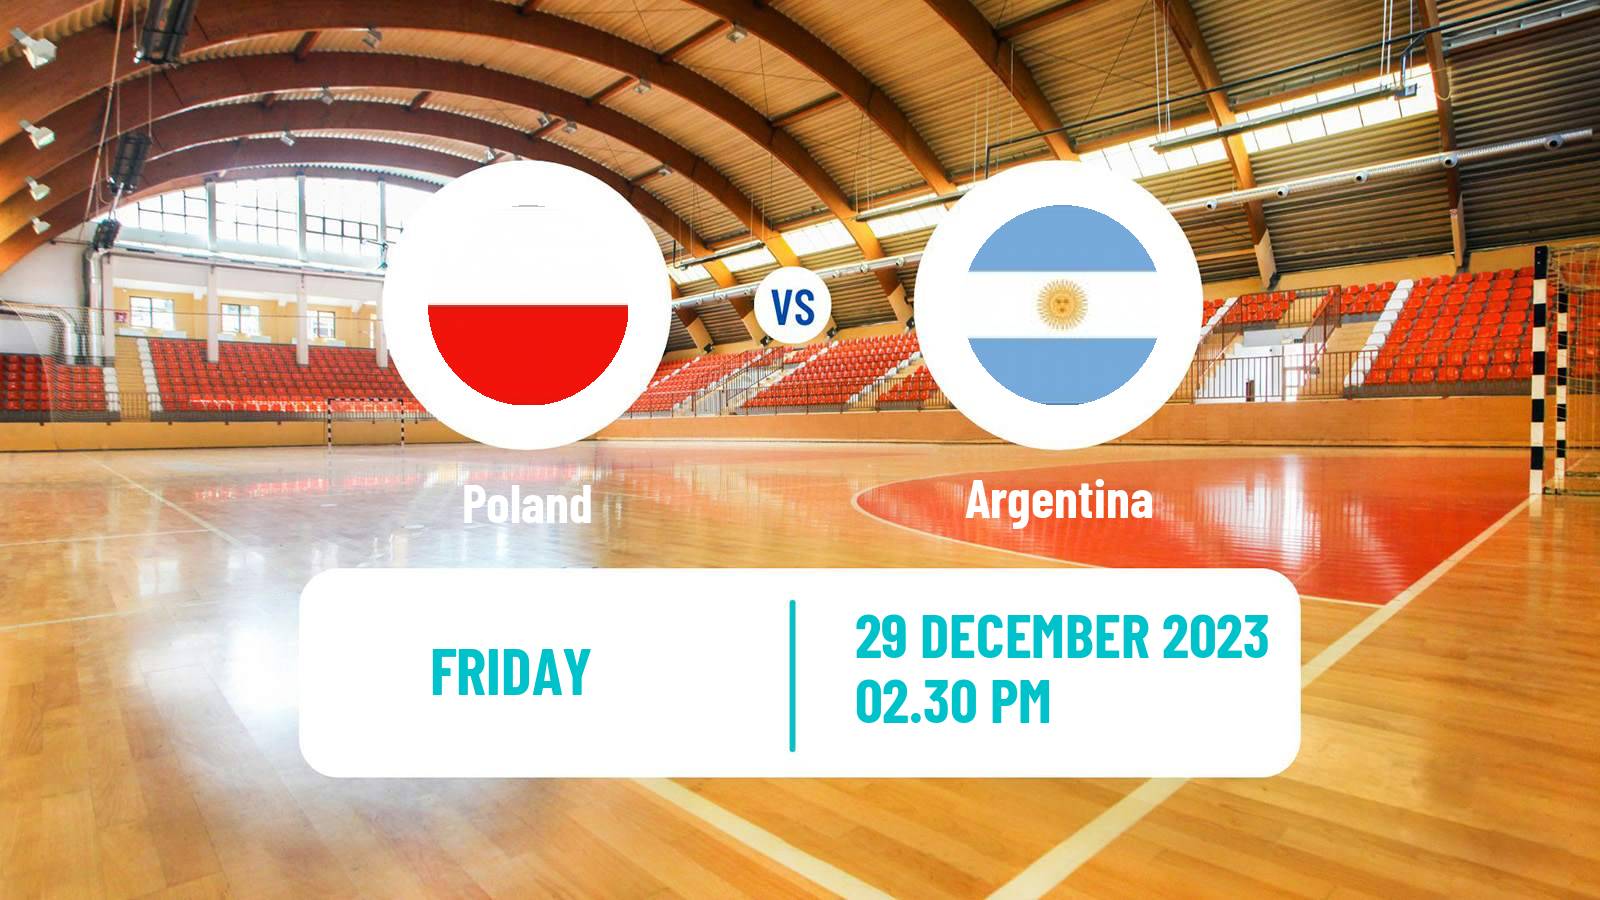 Handball Friendly International Handball Poland - Argentina